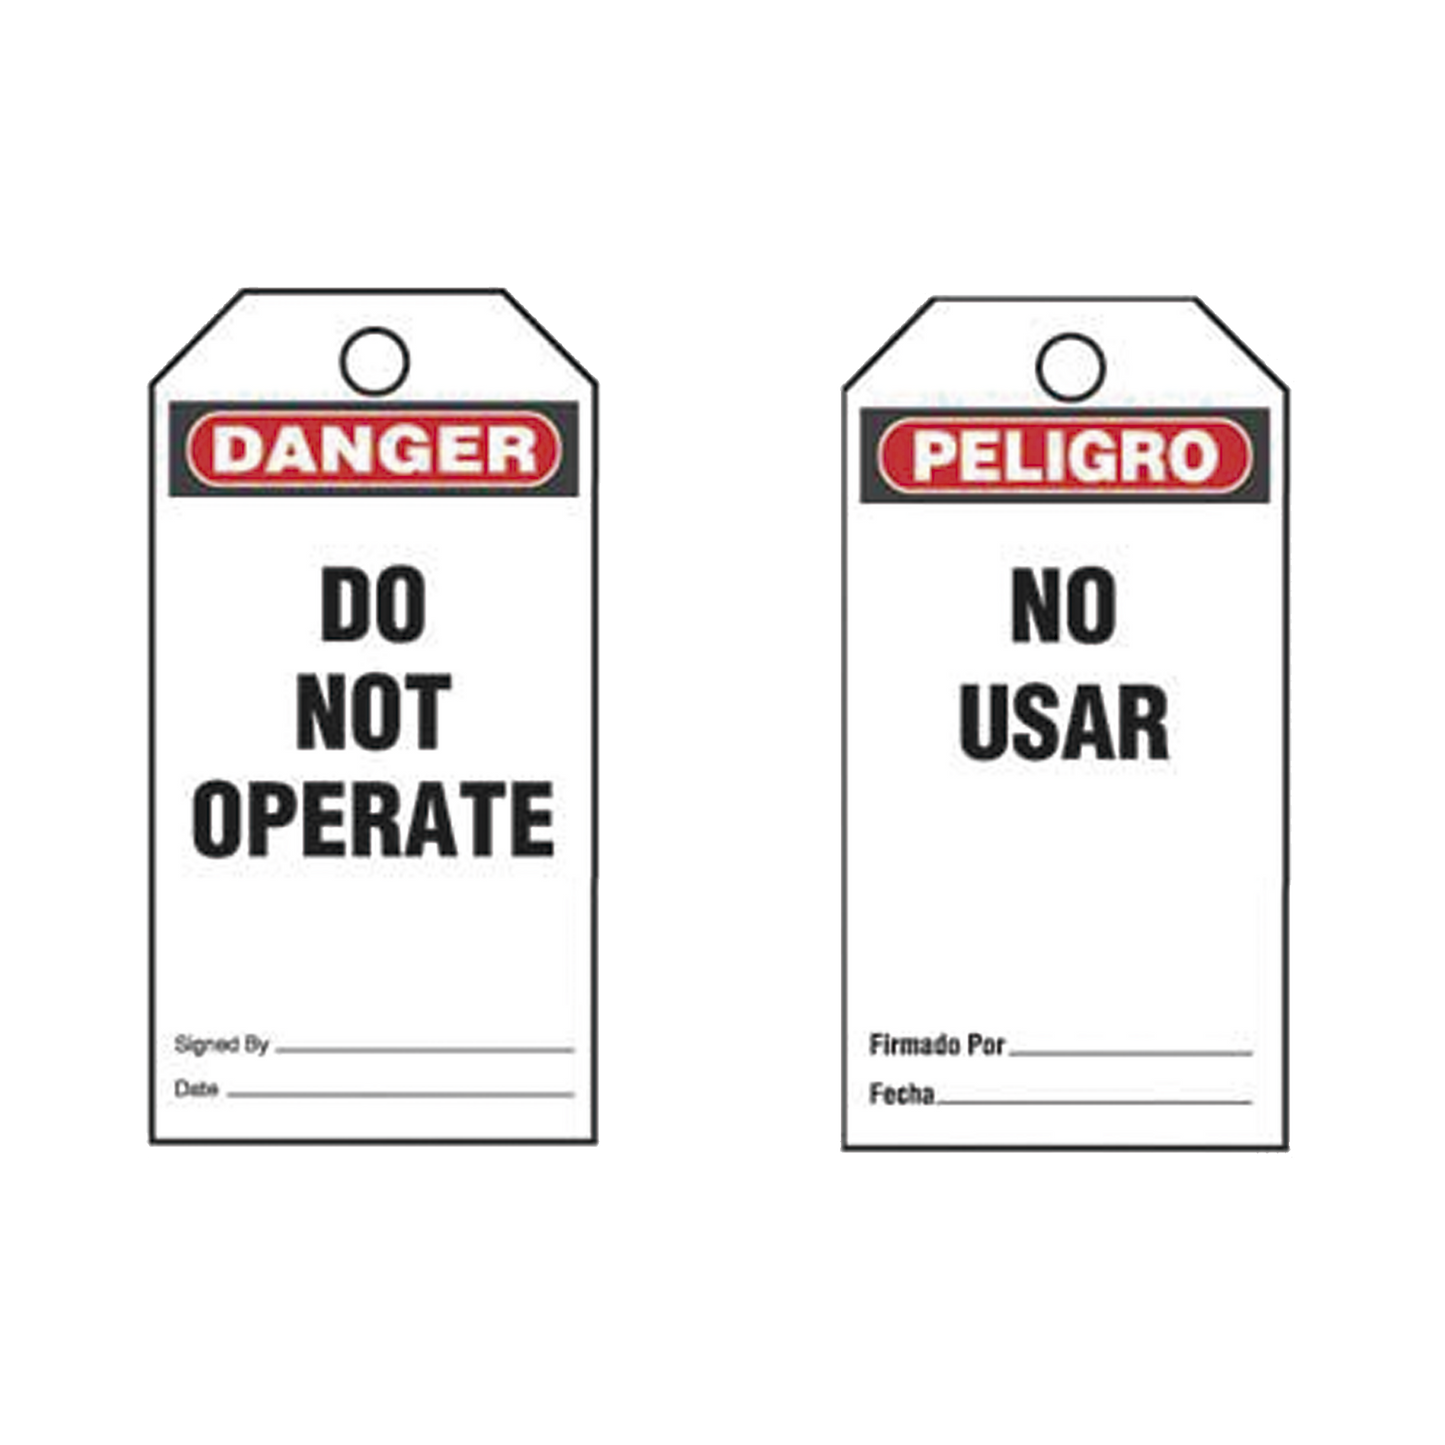 Paquete de 25 Etiquetas de Seguridad, Con Texto "Peligro, No Usar", de 76 x 146 mm, Color Negro Sobre Blanco